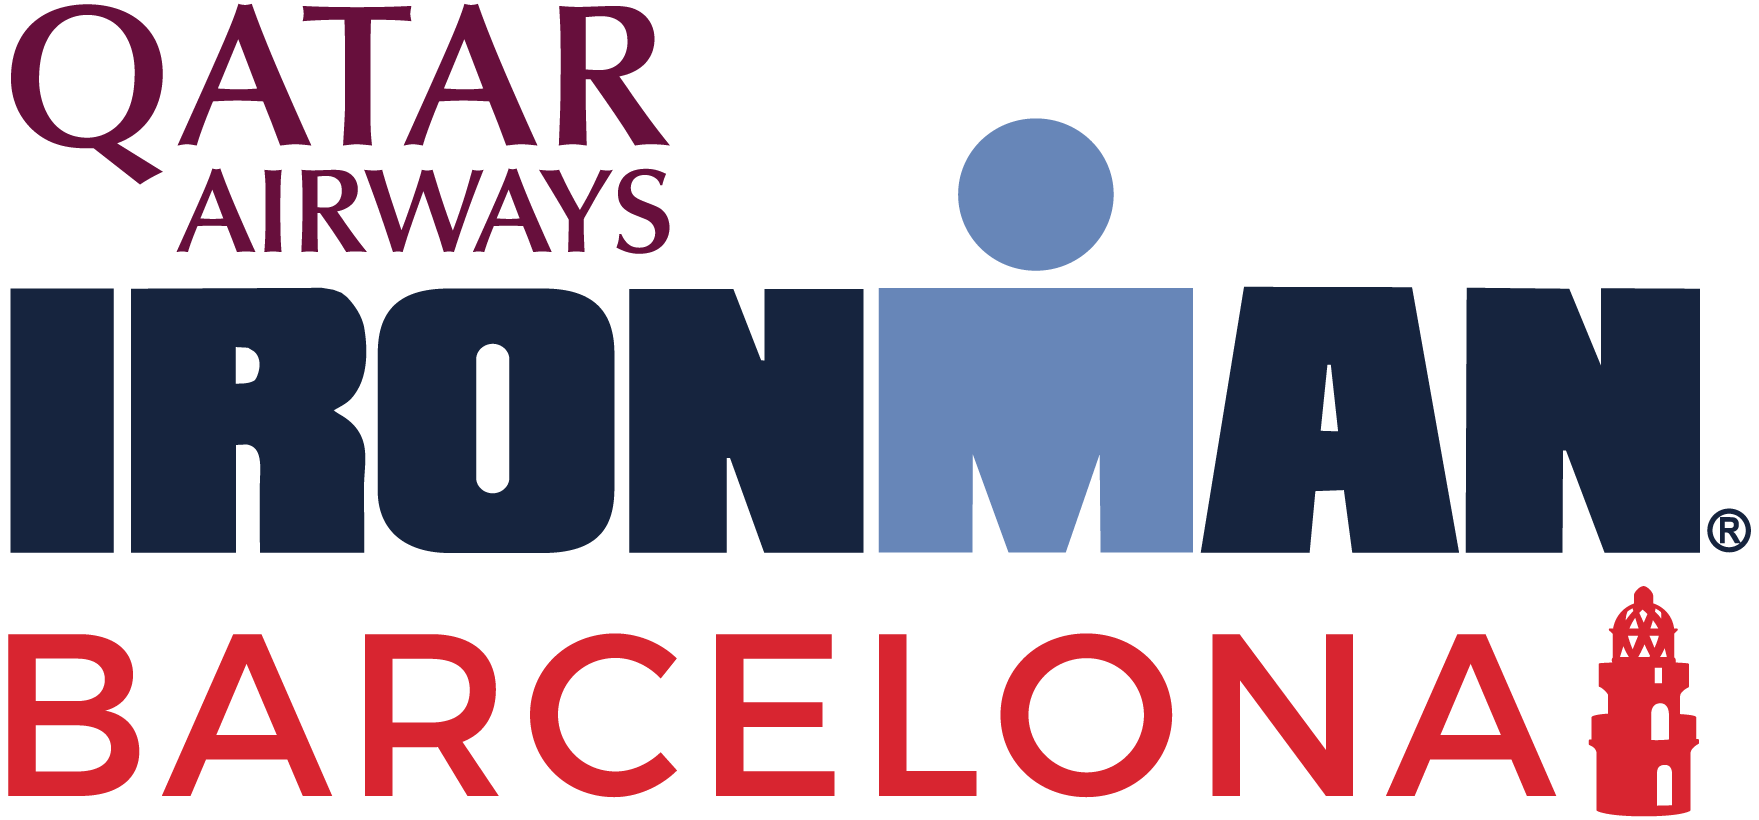 IRONMAN Barcelona logo on RaceRaves